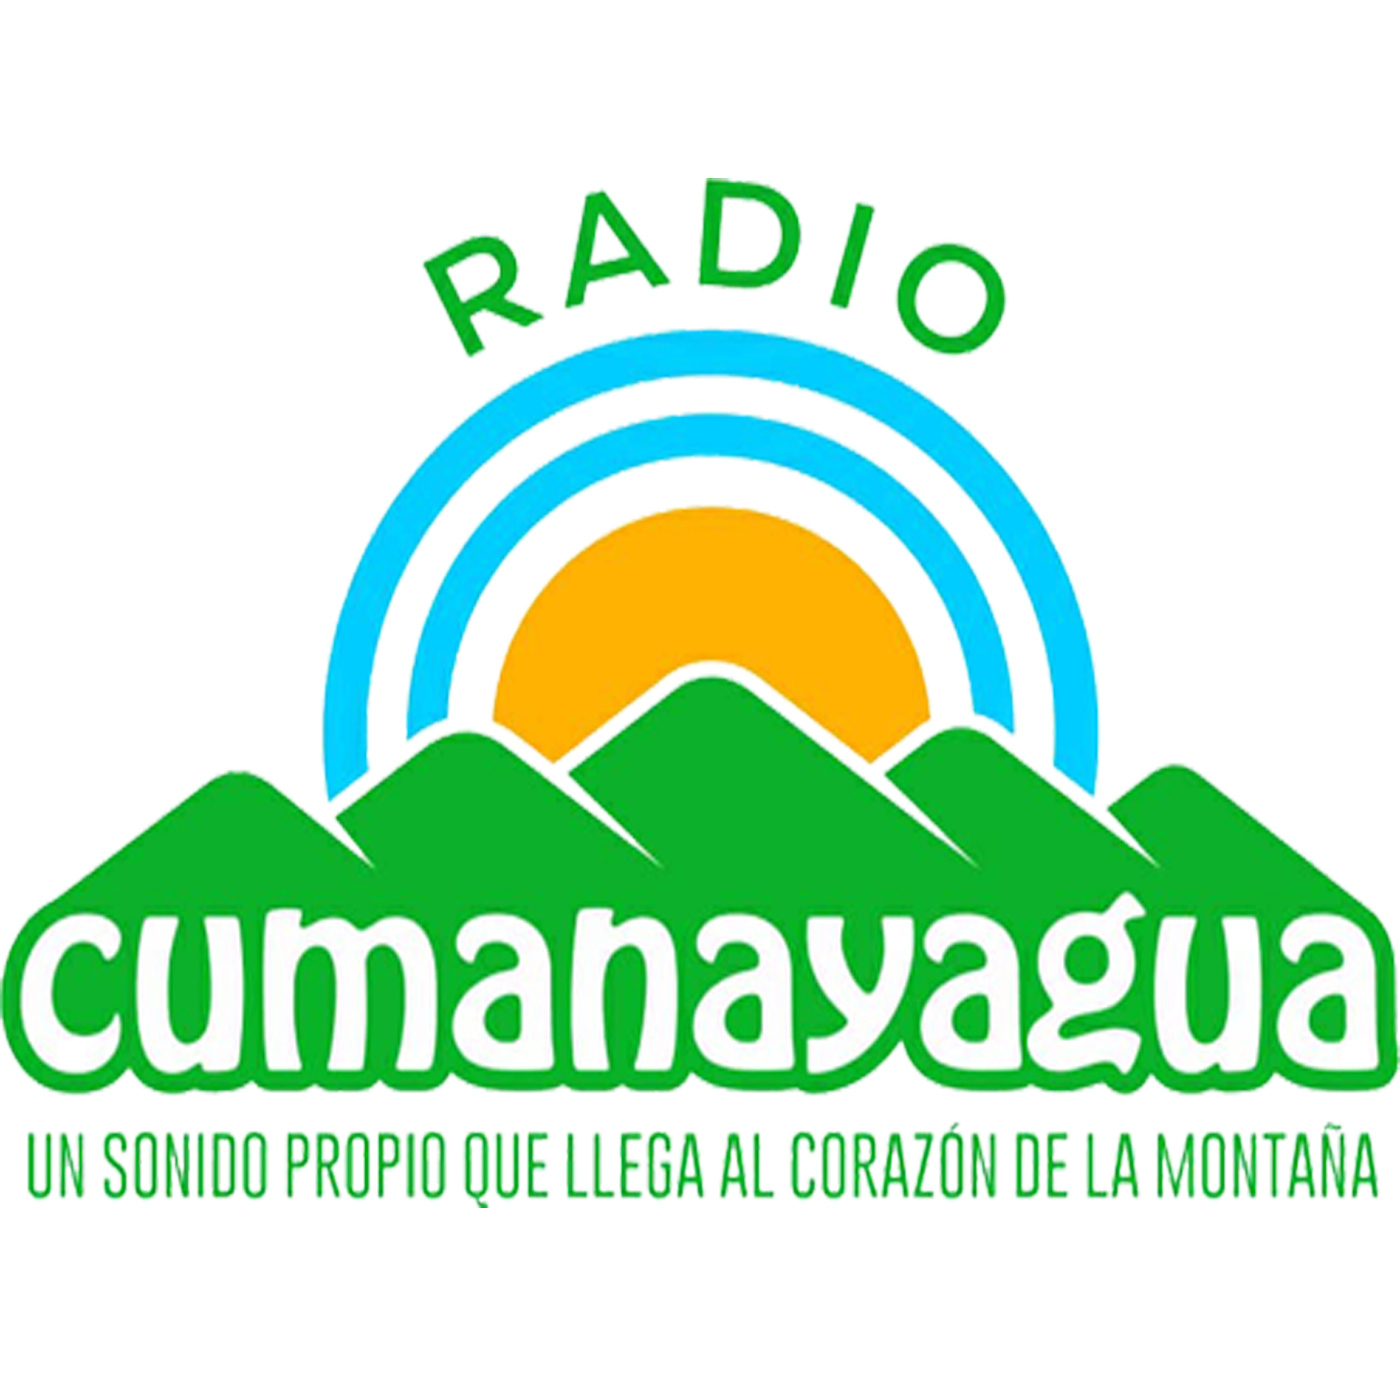 CMFK Cumanayagua